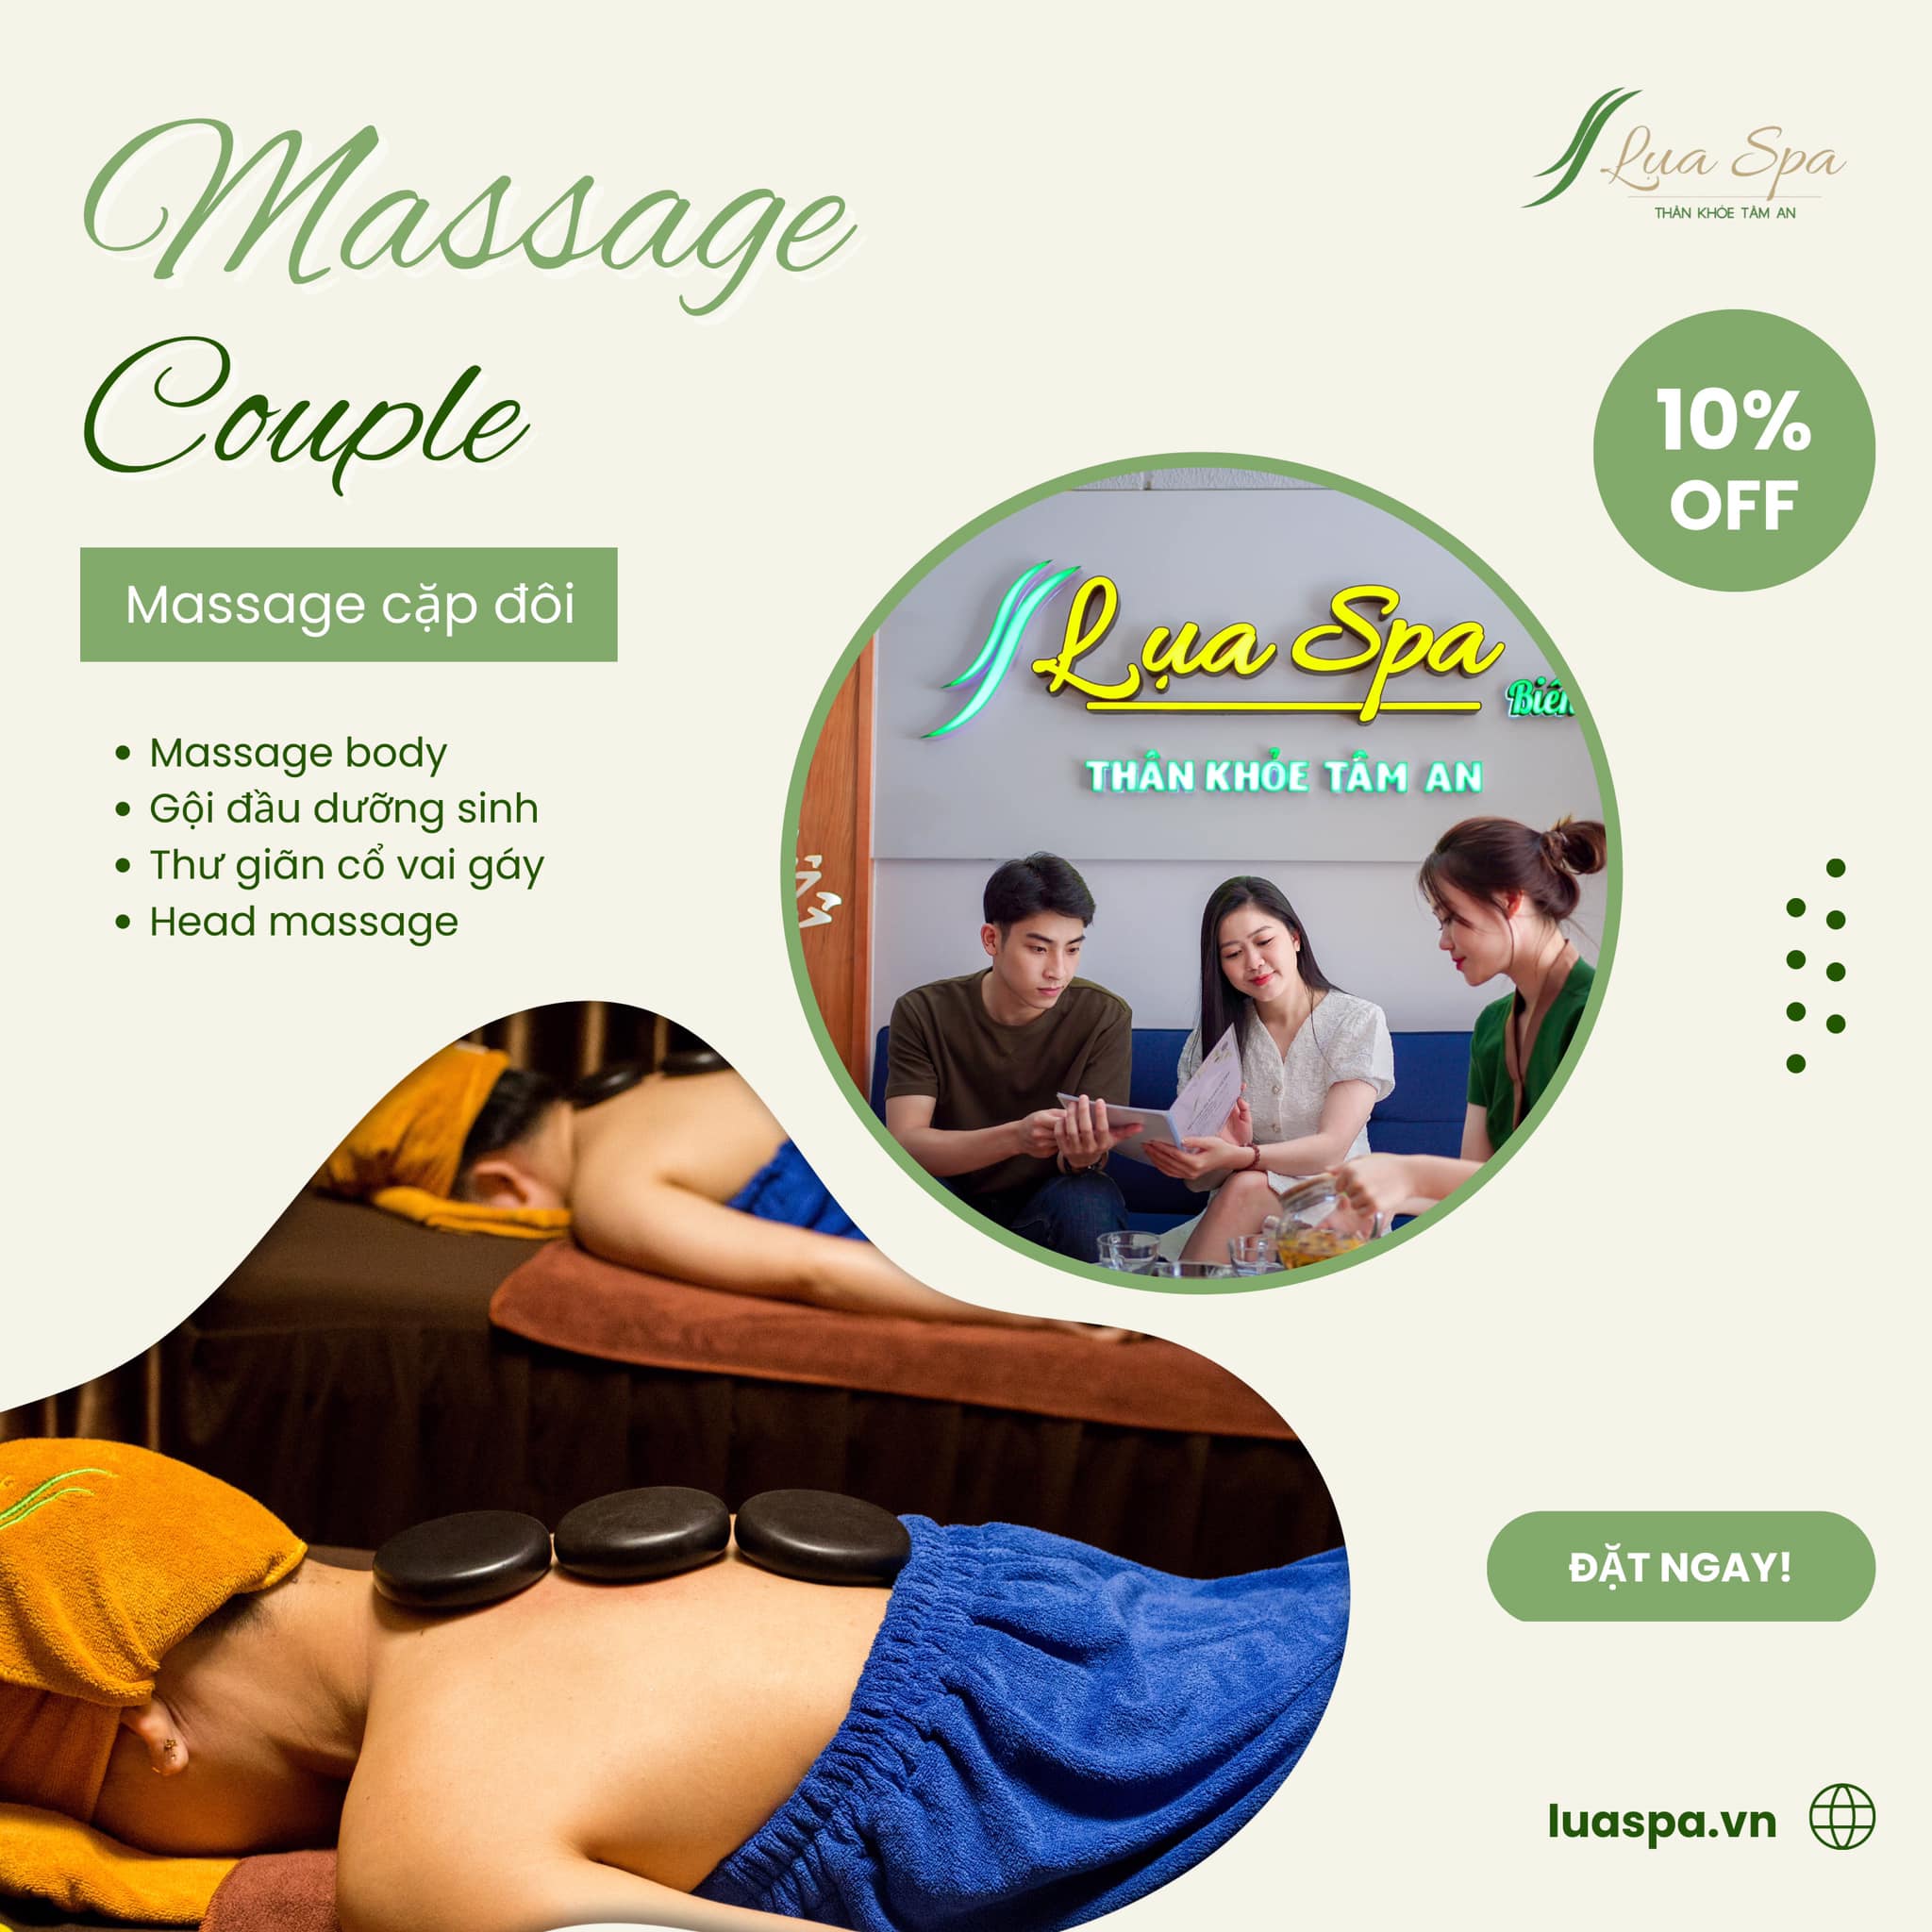 Content về massage - Massage couple 